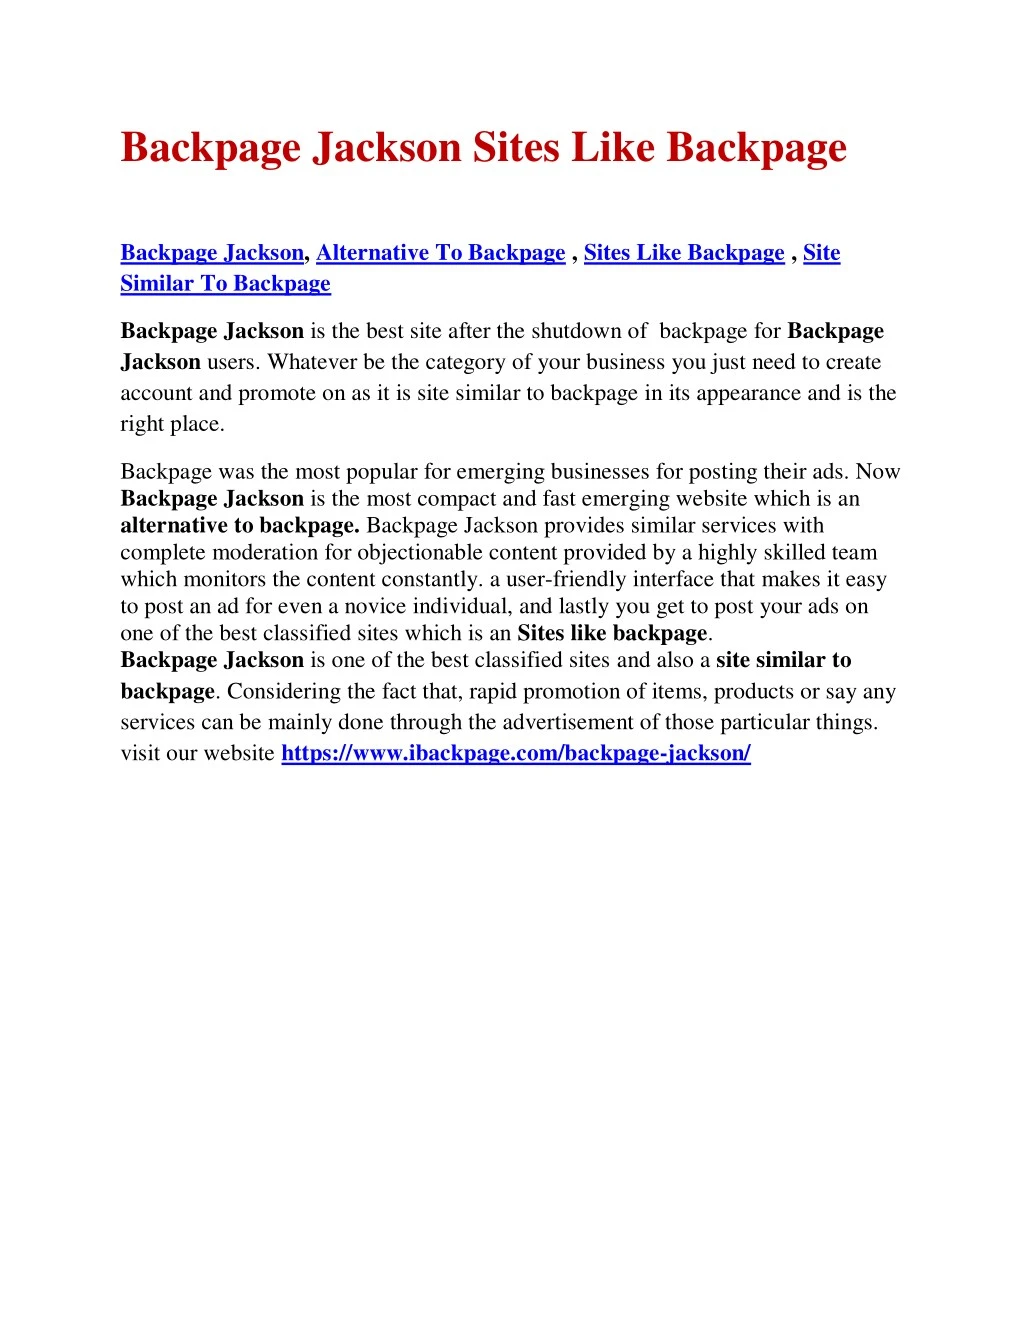 backpage jackson sites like backpage